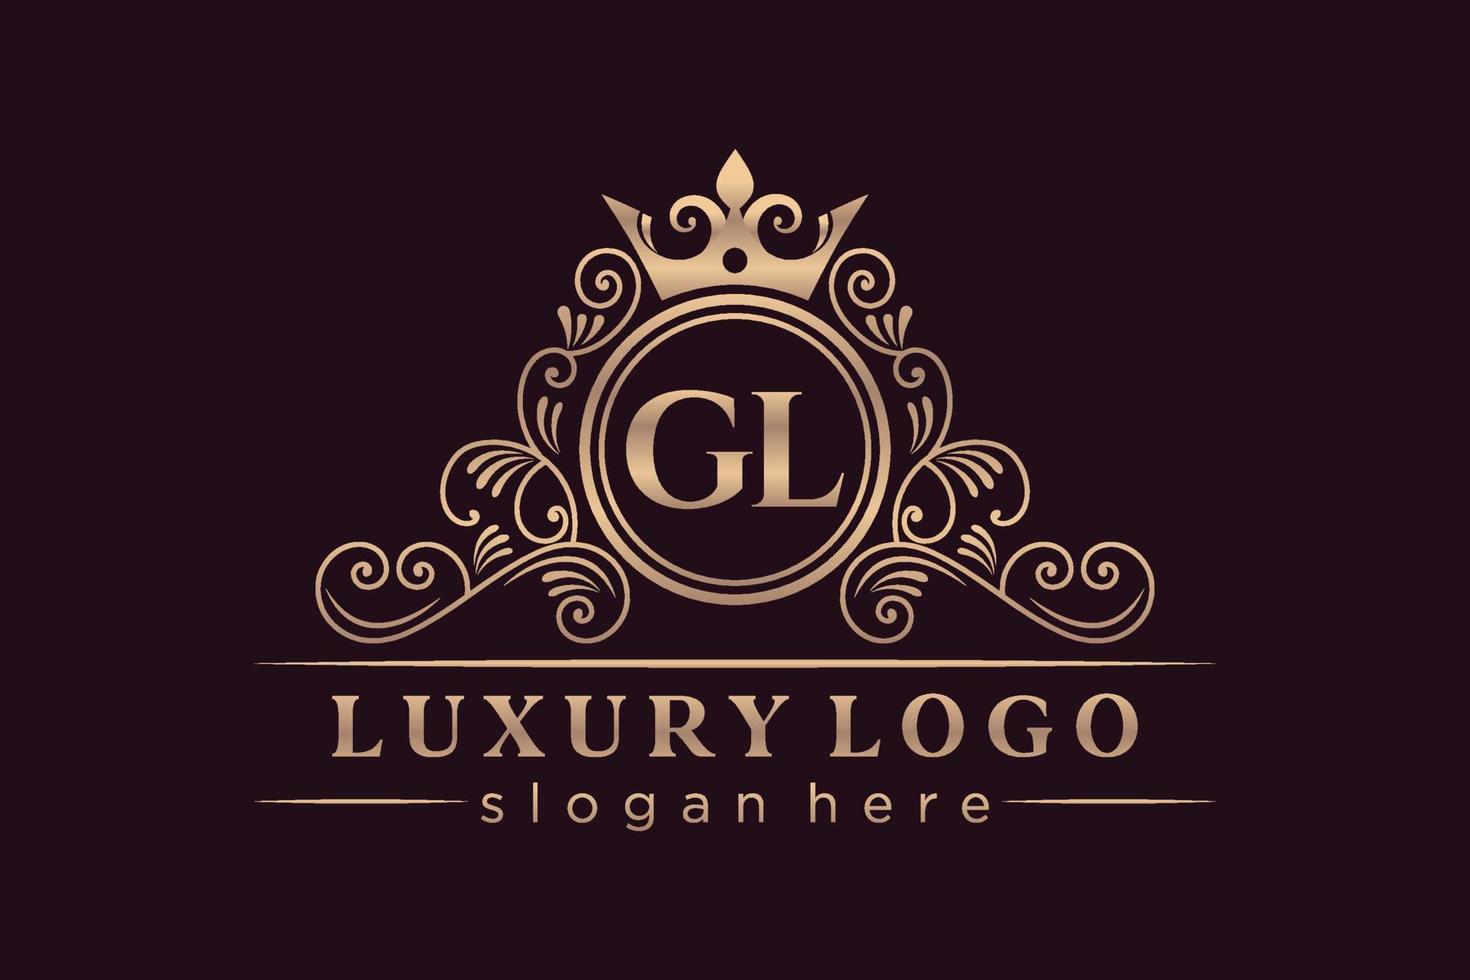 GL Initial Letter Gold calligraphic feminine floral hand drawn heraldic monogram antique vintage style luxury logo design Premium Vector